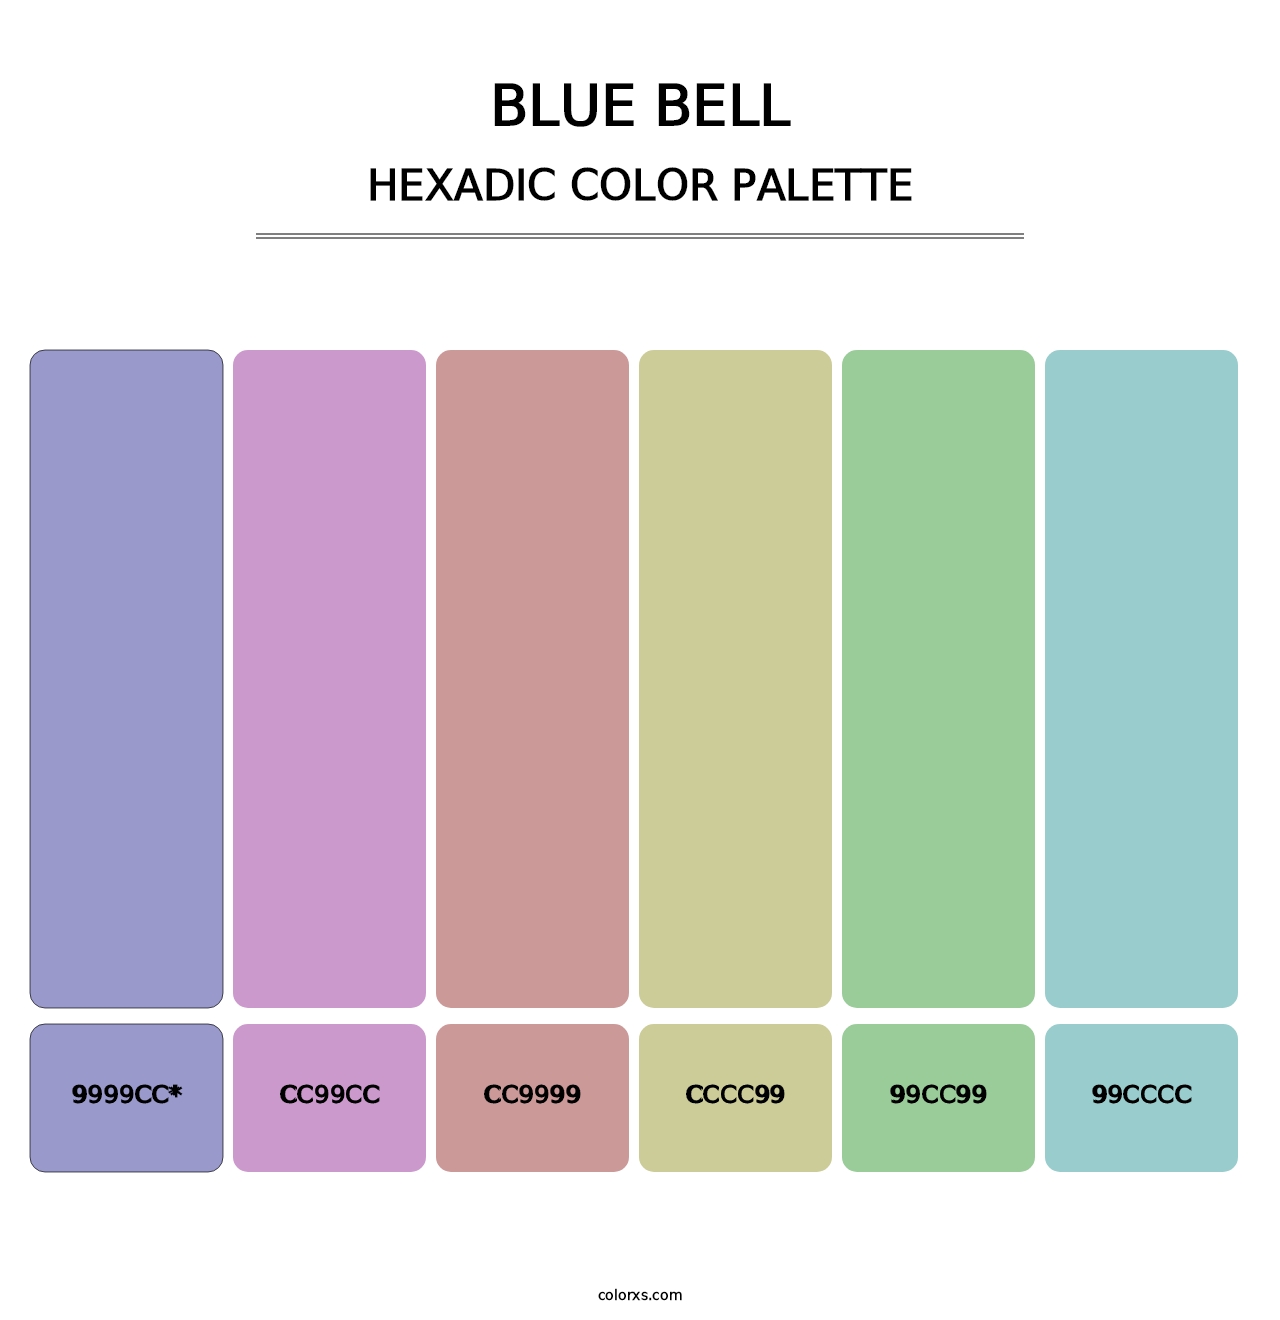 Blue Bell - Hexadic Color Palette